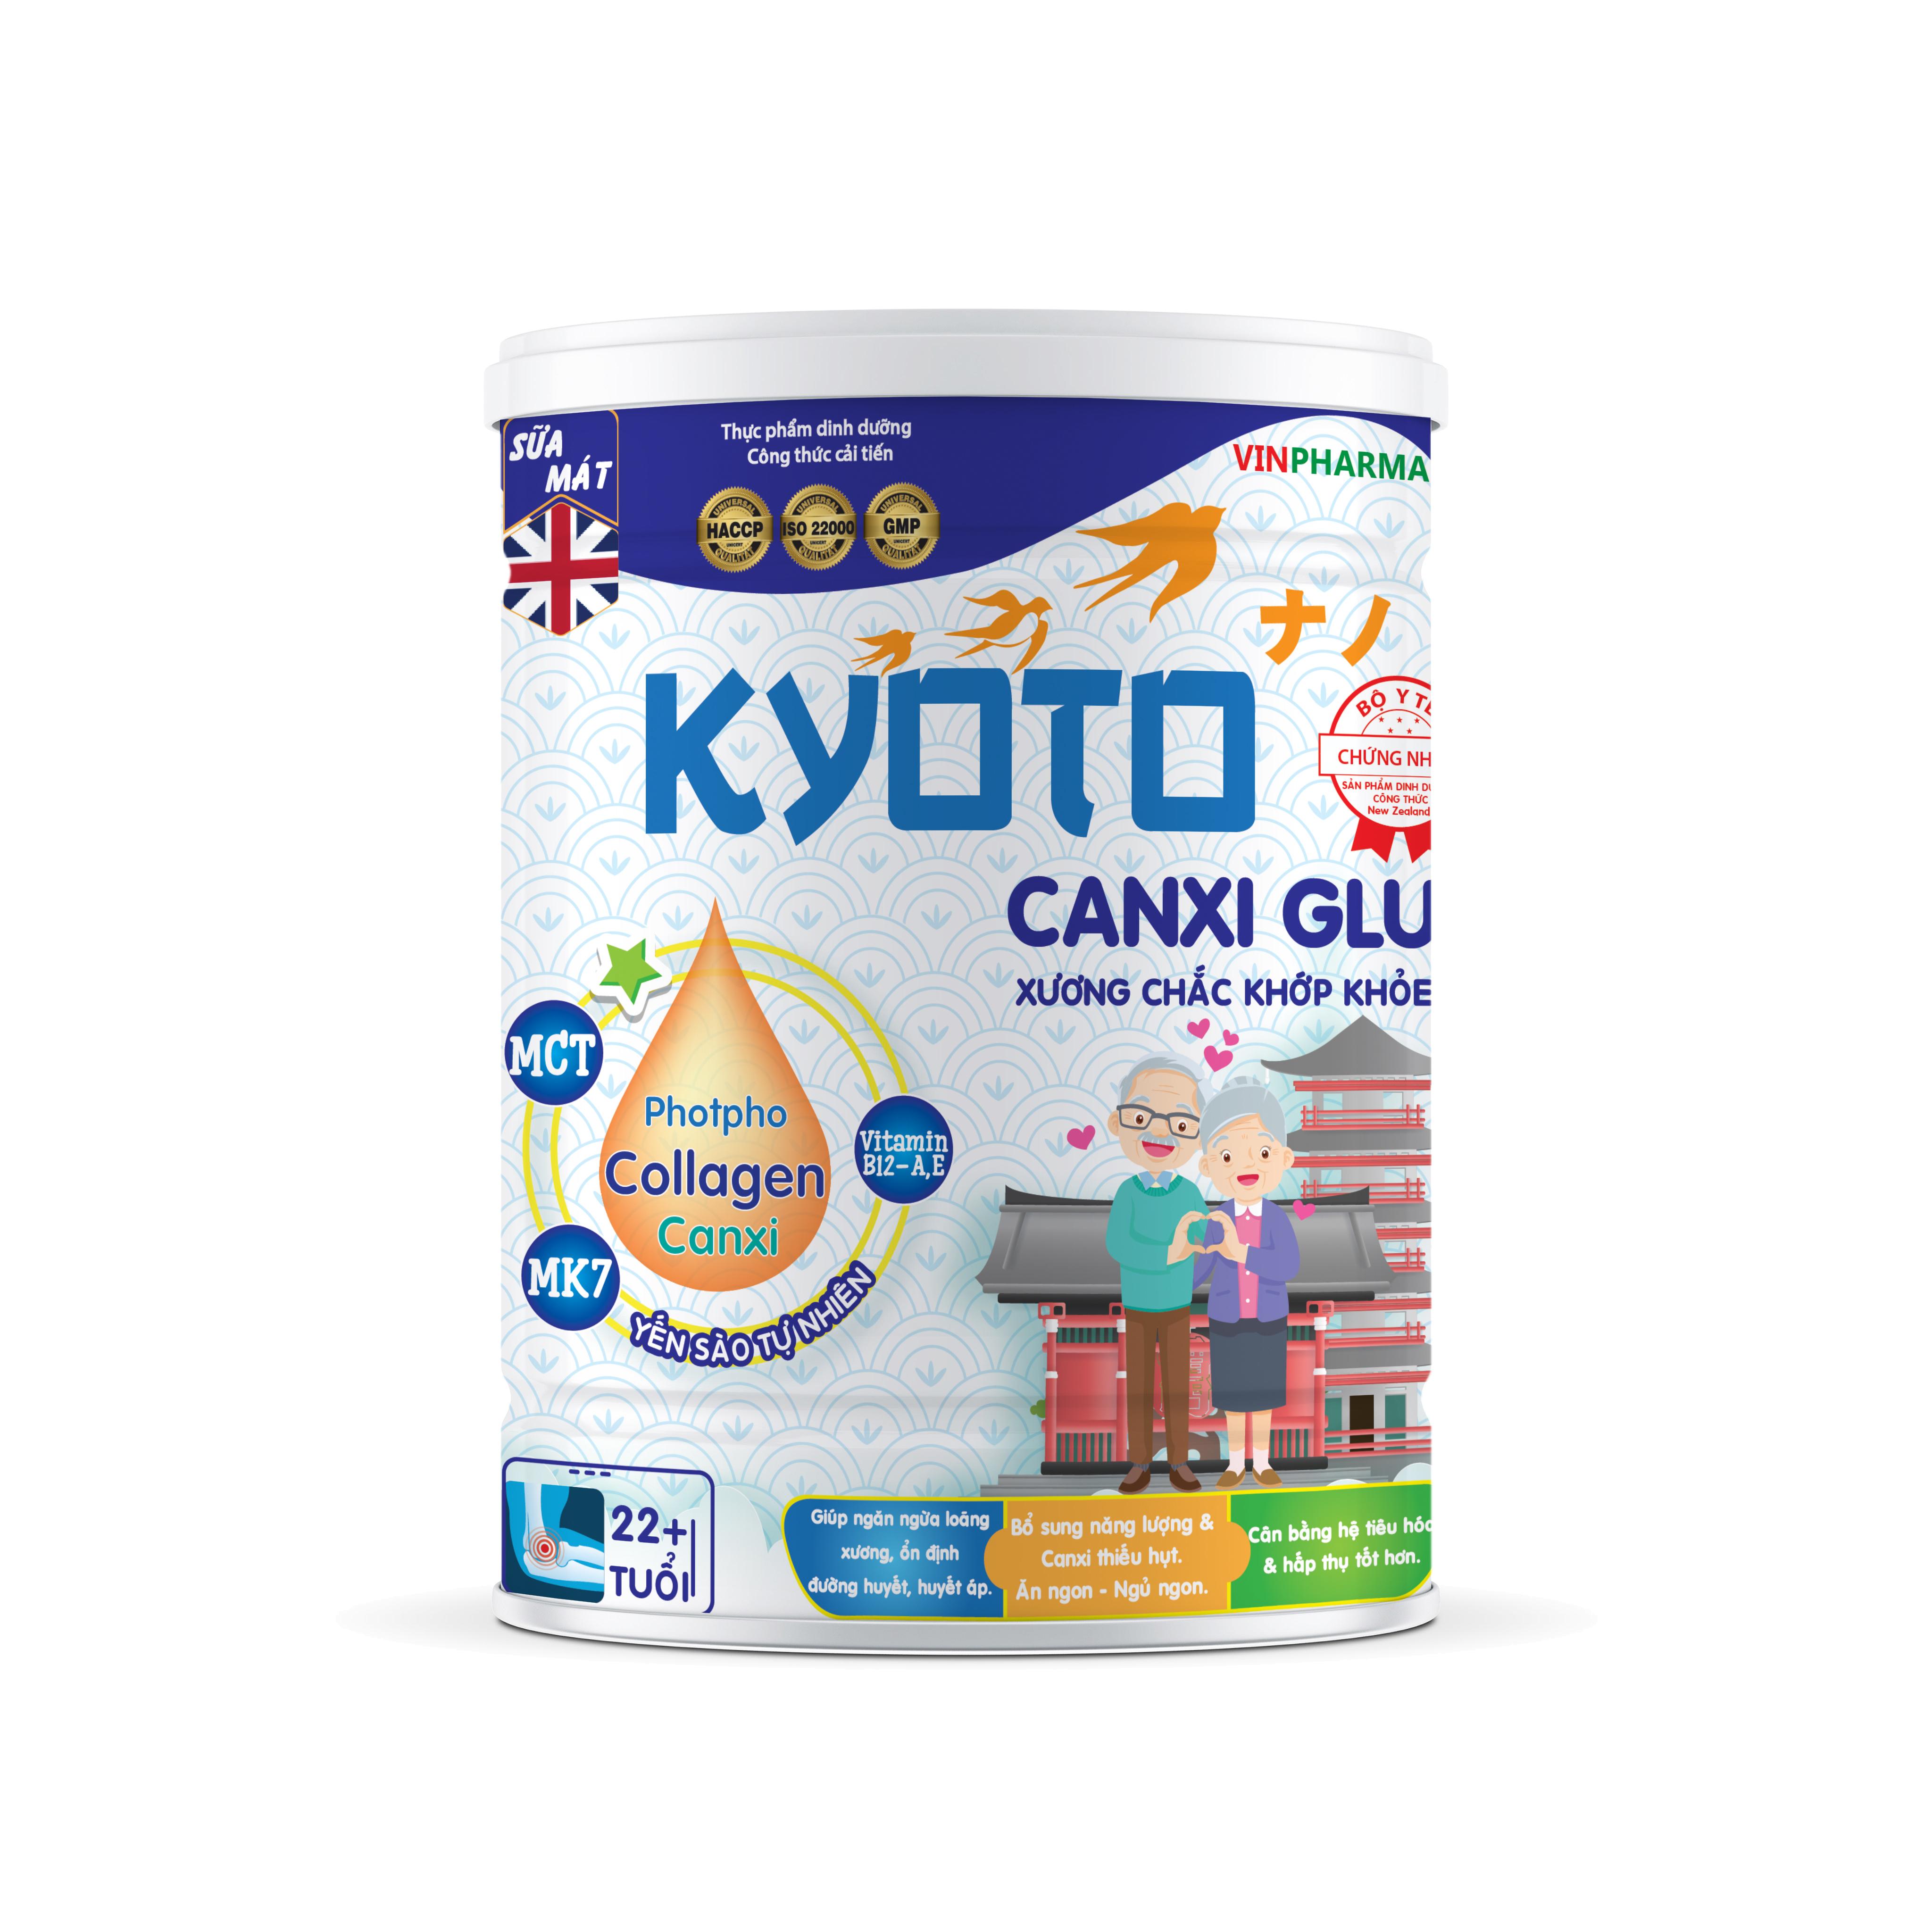 Sữa bột dinh dưỡng Kyoto CANXI GLU Giúp xương khớp chắc khỏe, dành cho người lớn tuổi, người hay nhức mỏi xương khớp NUTRI PLUS-900G